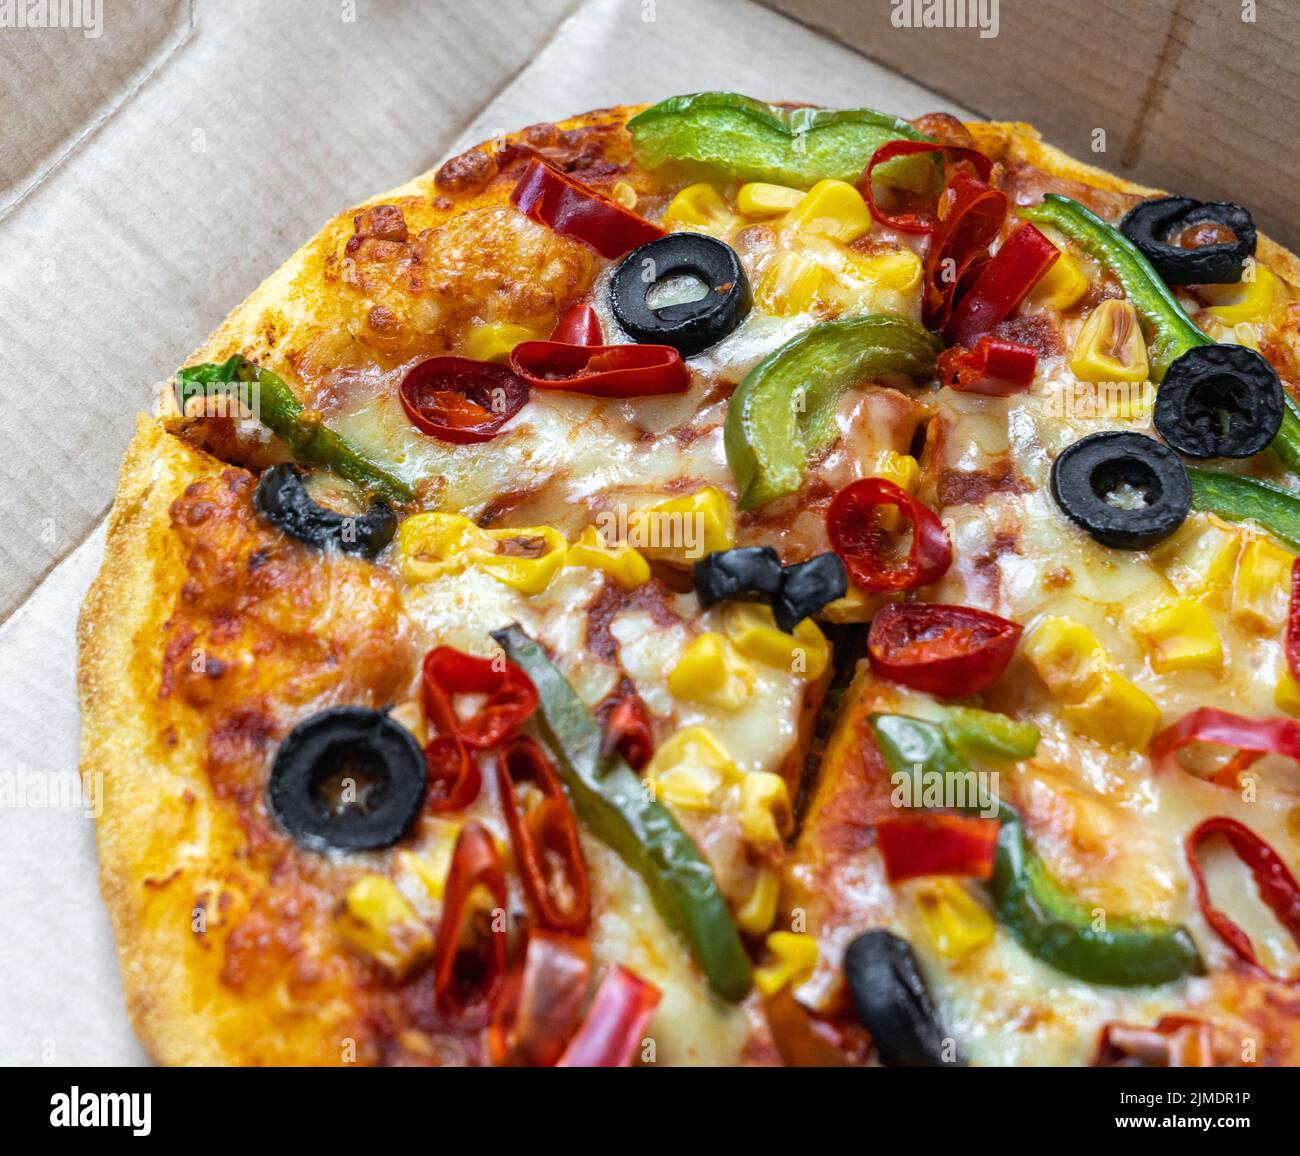 Vegetarische Pizza mit schwarzen Oliven, grünen Paprika, rotem Paprika und goldenem Mais in einer Takeout-Box. Stockfoto